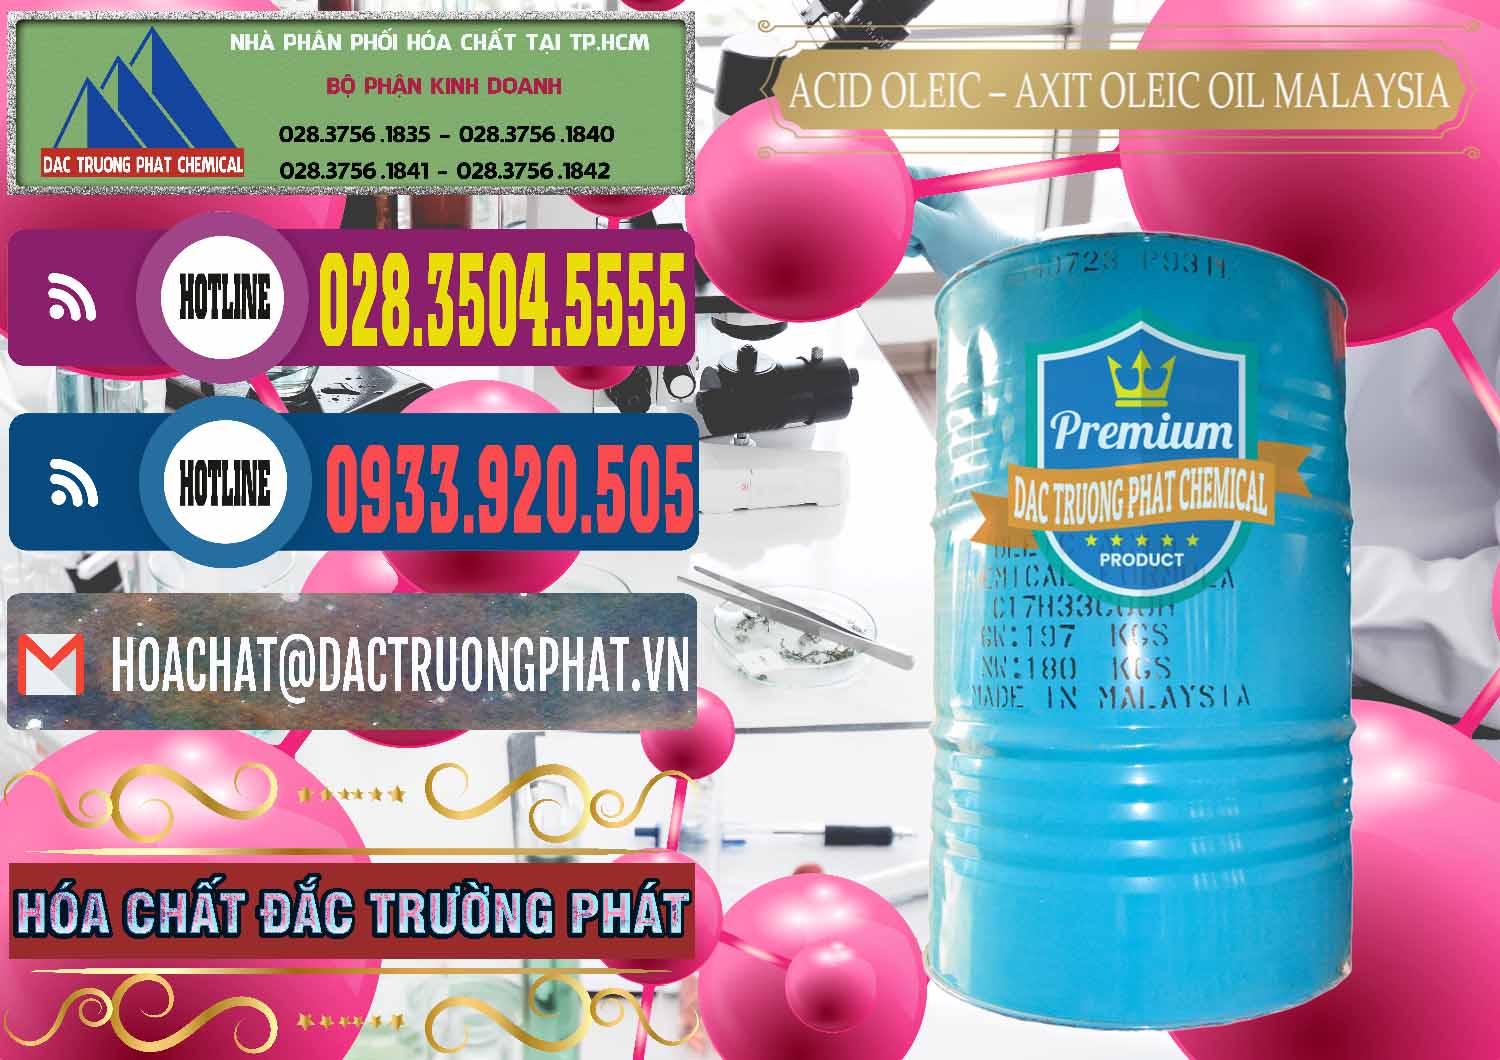 Công ty chuyên cung cấp _ bán Acid Oleic – Axit Oleic Oil Malaysia - 0013 - Cty bán - cung cấp hóa chất tại TP.HCM - muabanhoachat.com.vn